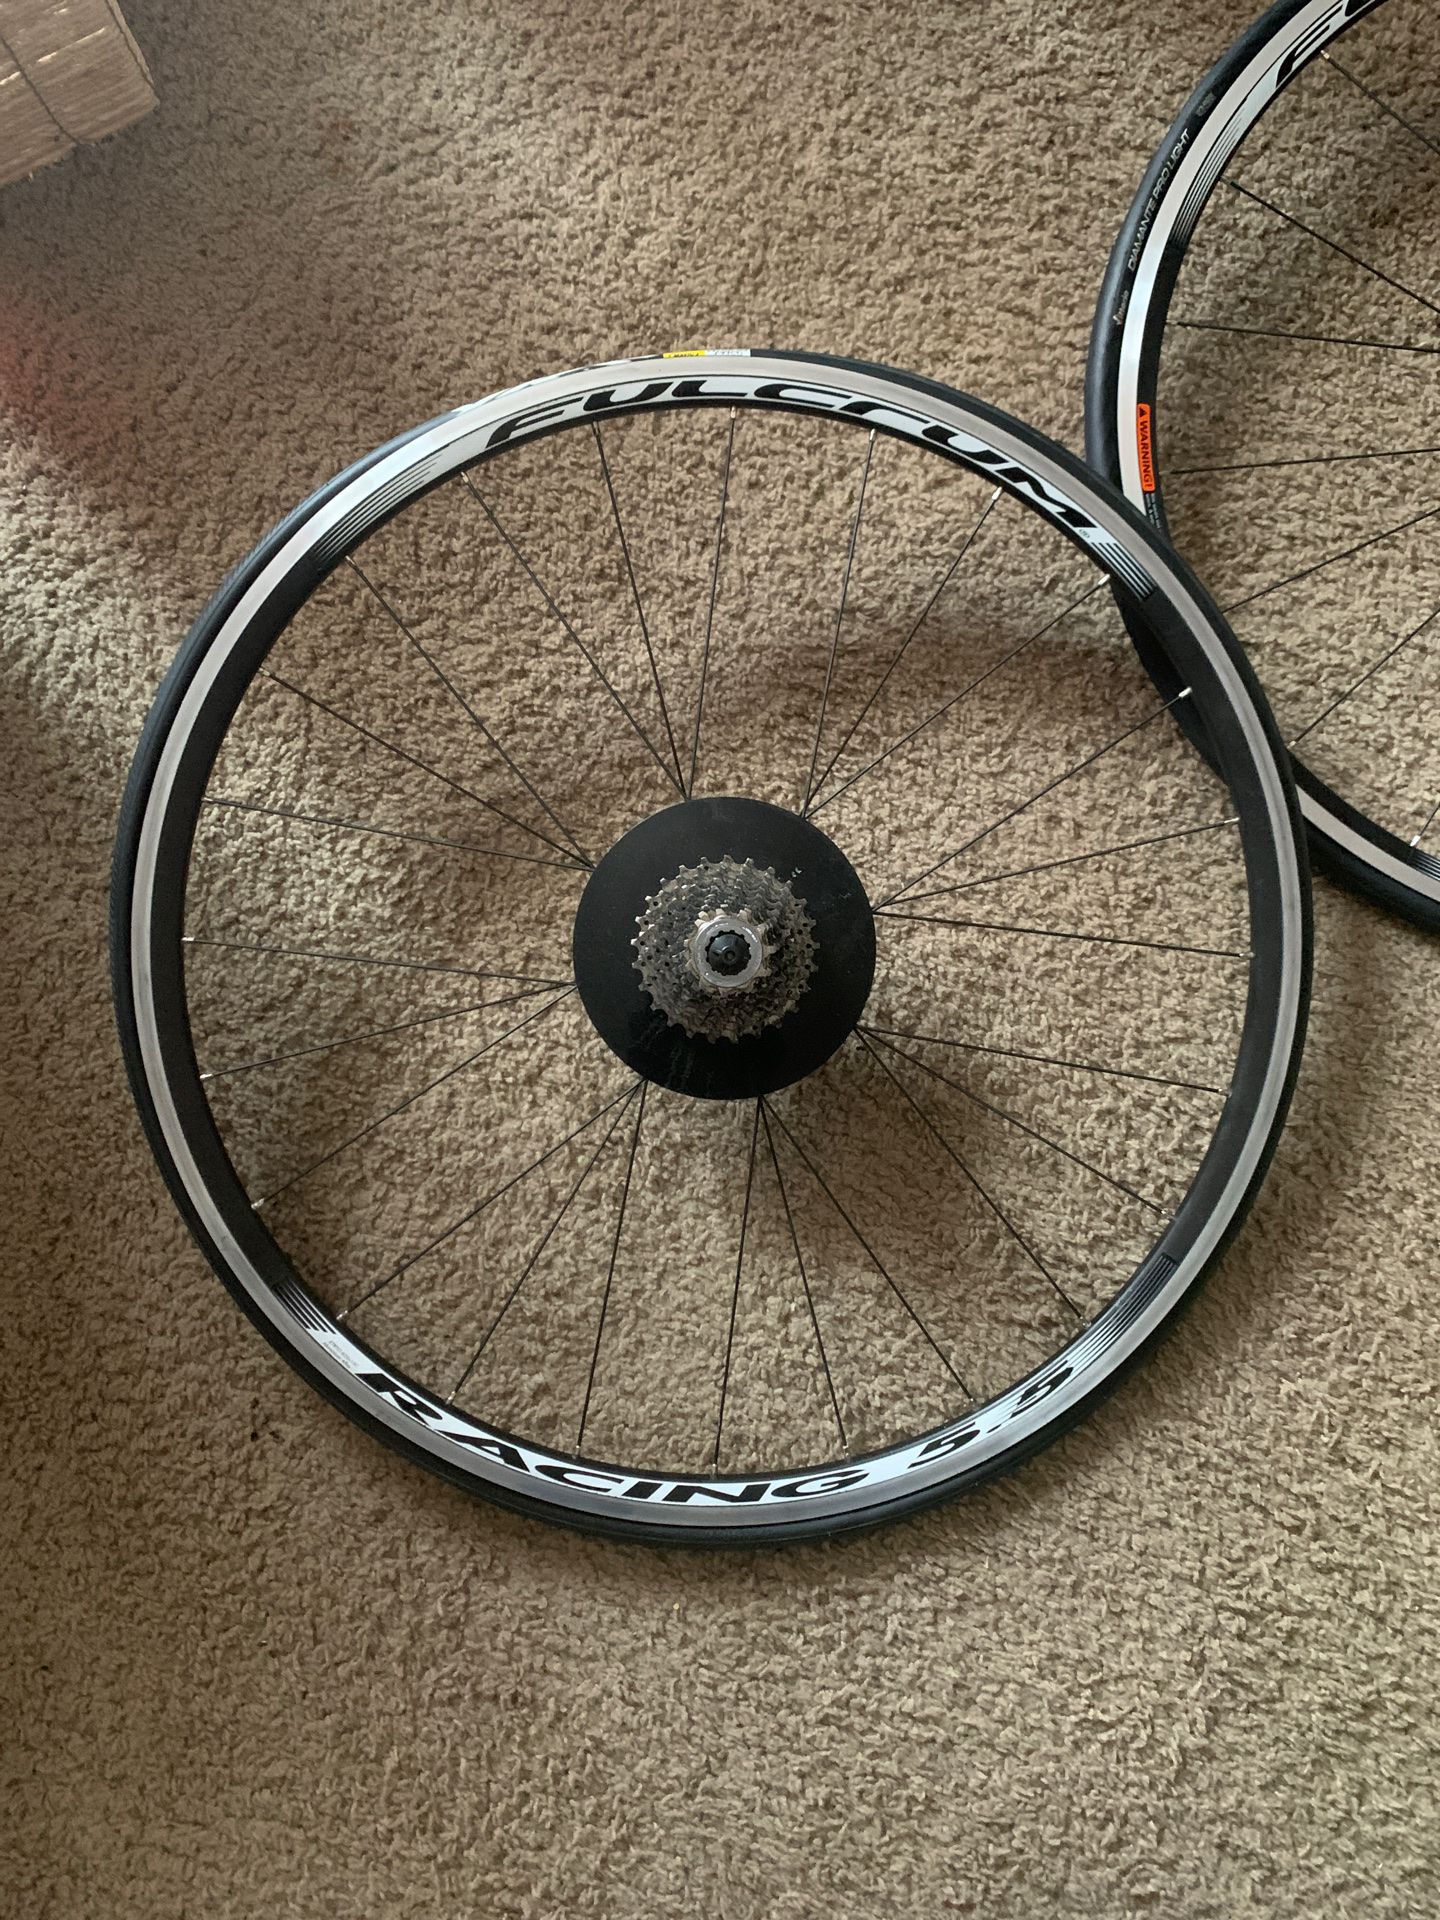 Fulcrum 5.5 racing bike tires